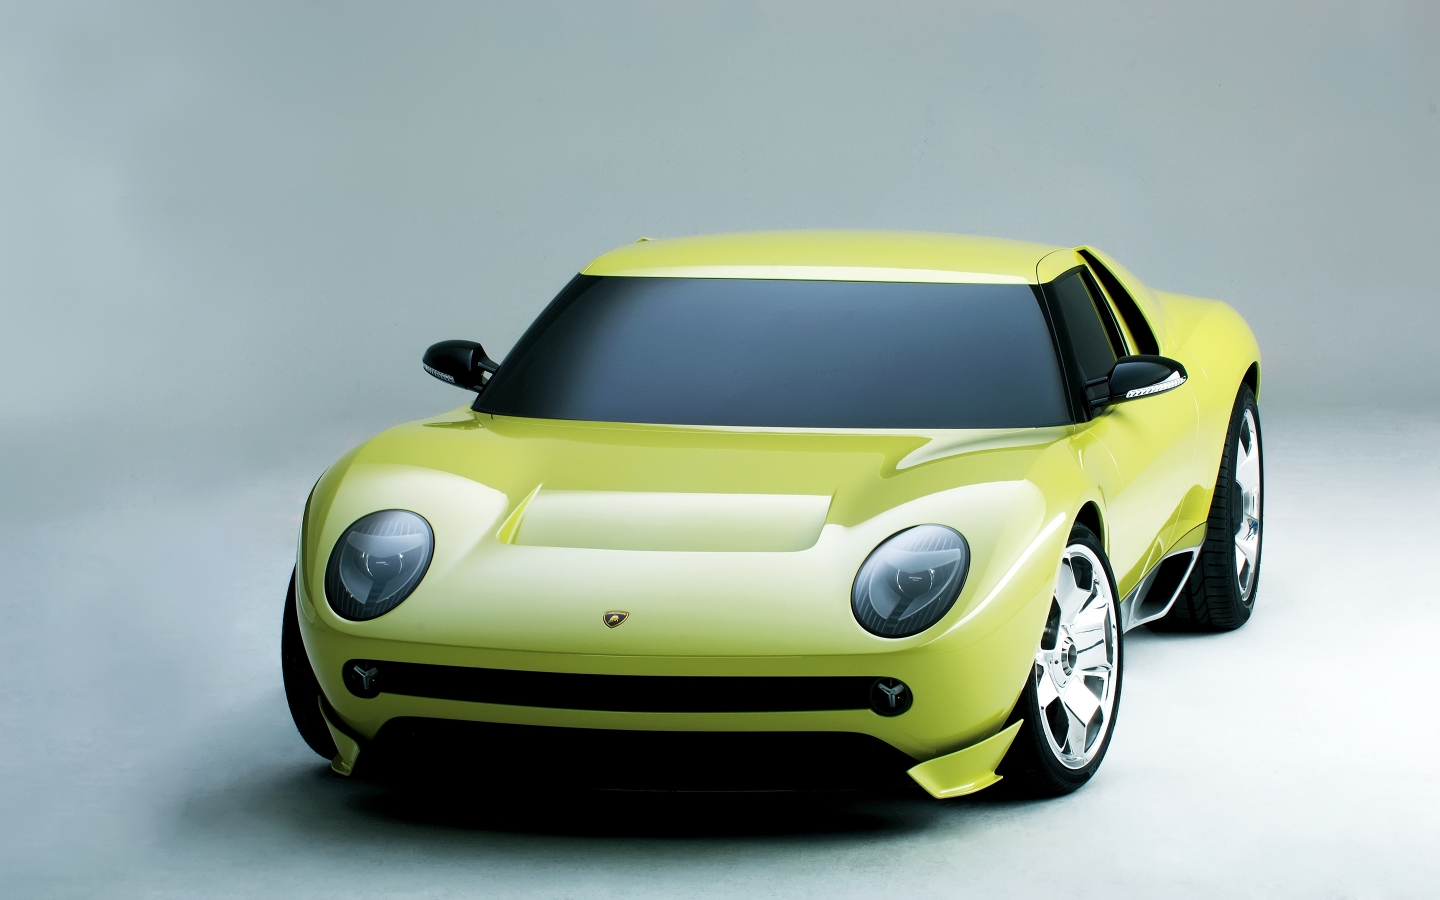 Lamborghini Miura Concept for 1440 x 900 widescreen resolution